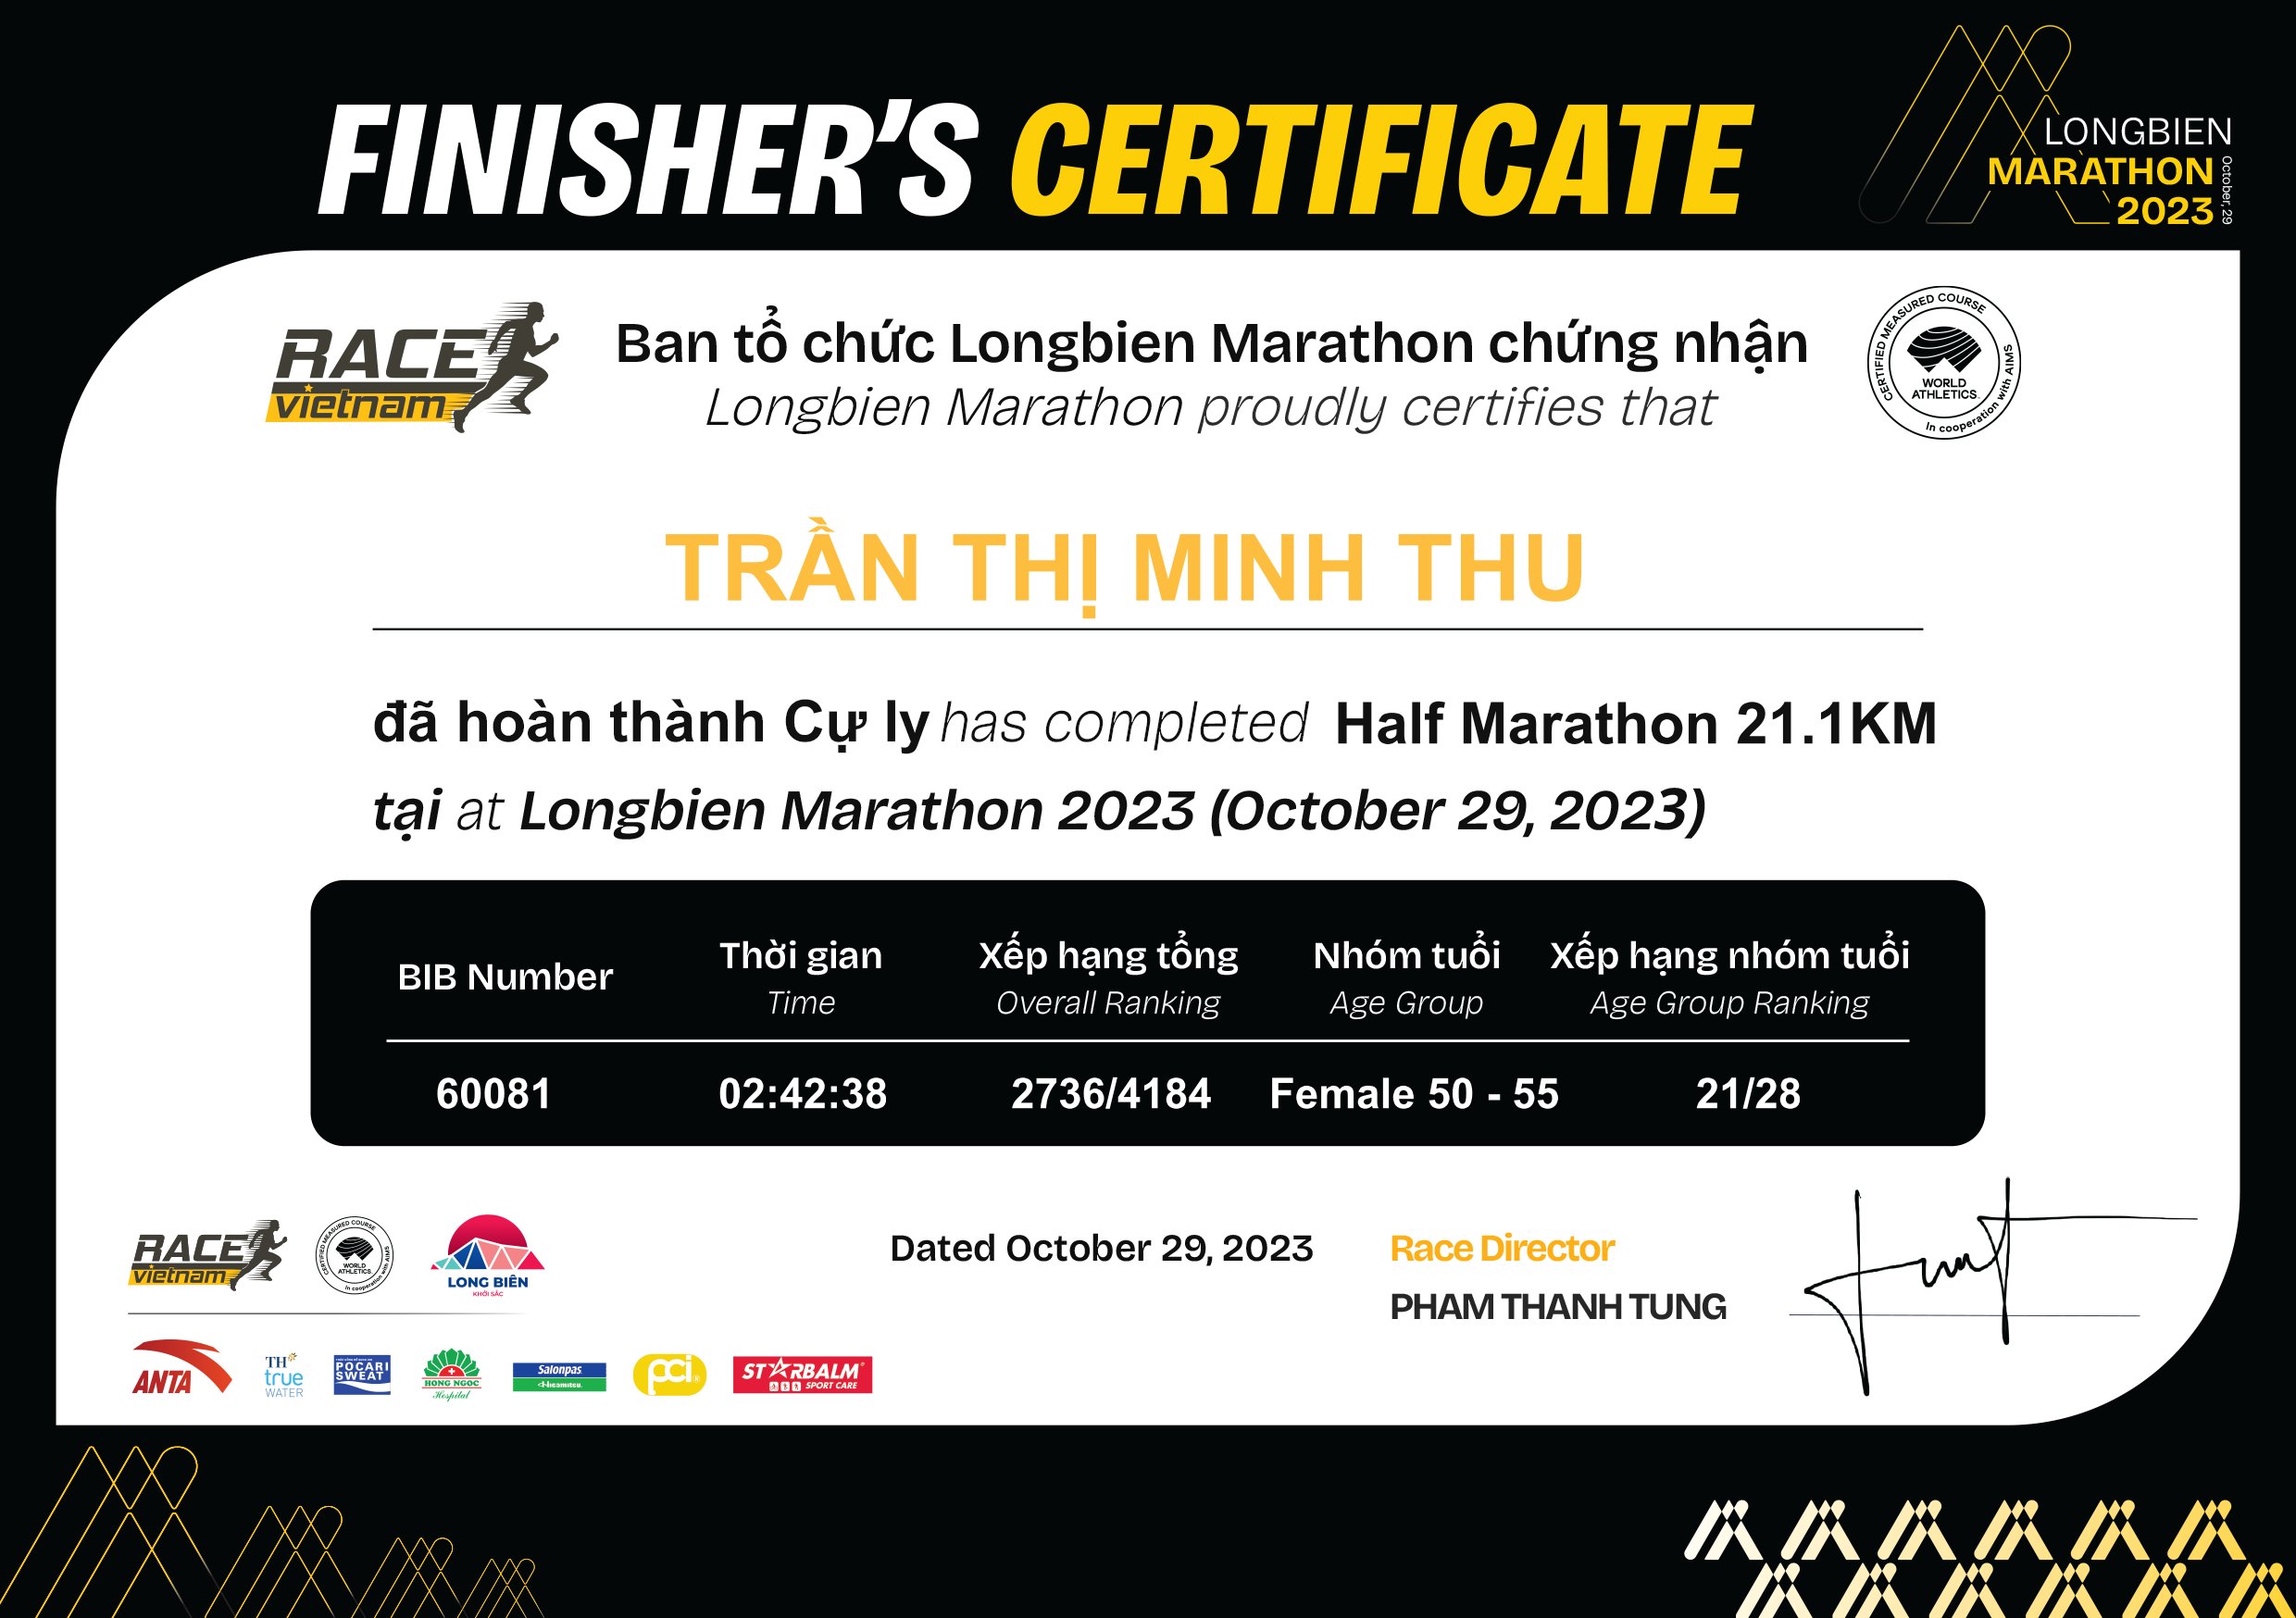 60081 - Trần Thị Minh Thu